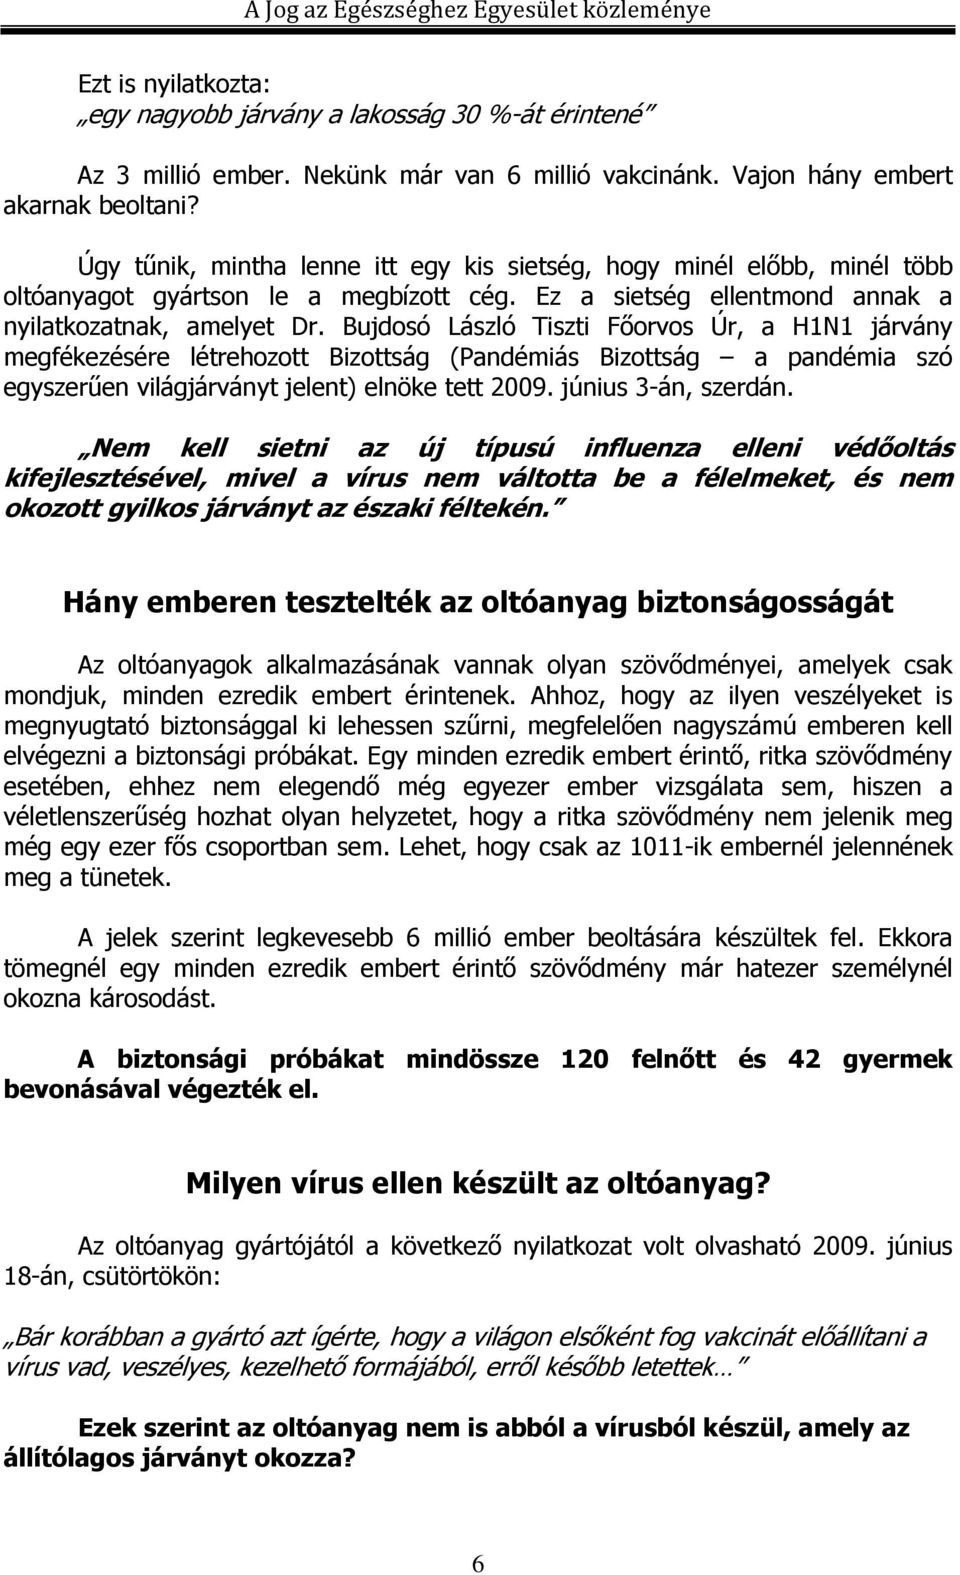 Bujdosó László Tiszti Fıorvos Úr, a H1N1 járvány megfékezésére létrehozott Bizottság (Pandémiás Bizottság a pandémia szó egyszerően világjárványt jelent) elnöke tett 2009. június 3-án, szerdán.